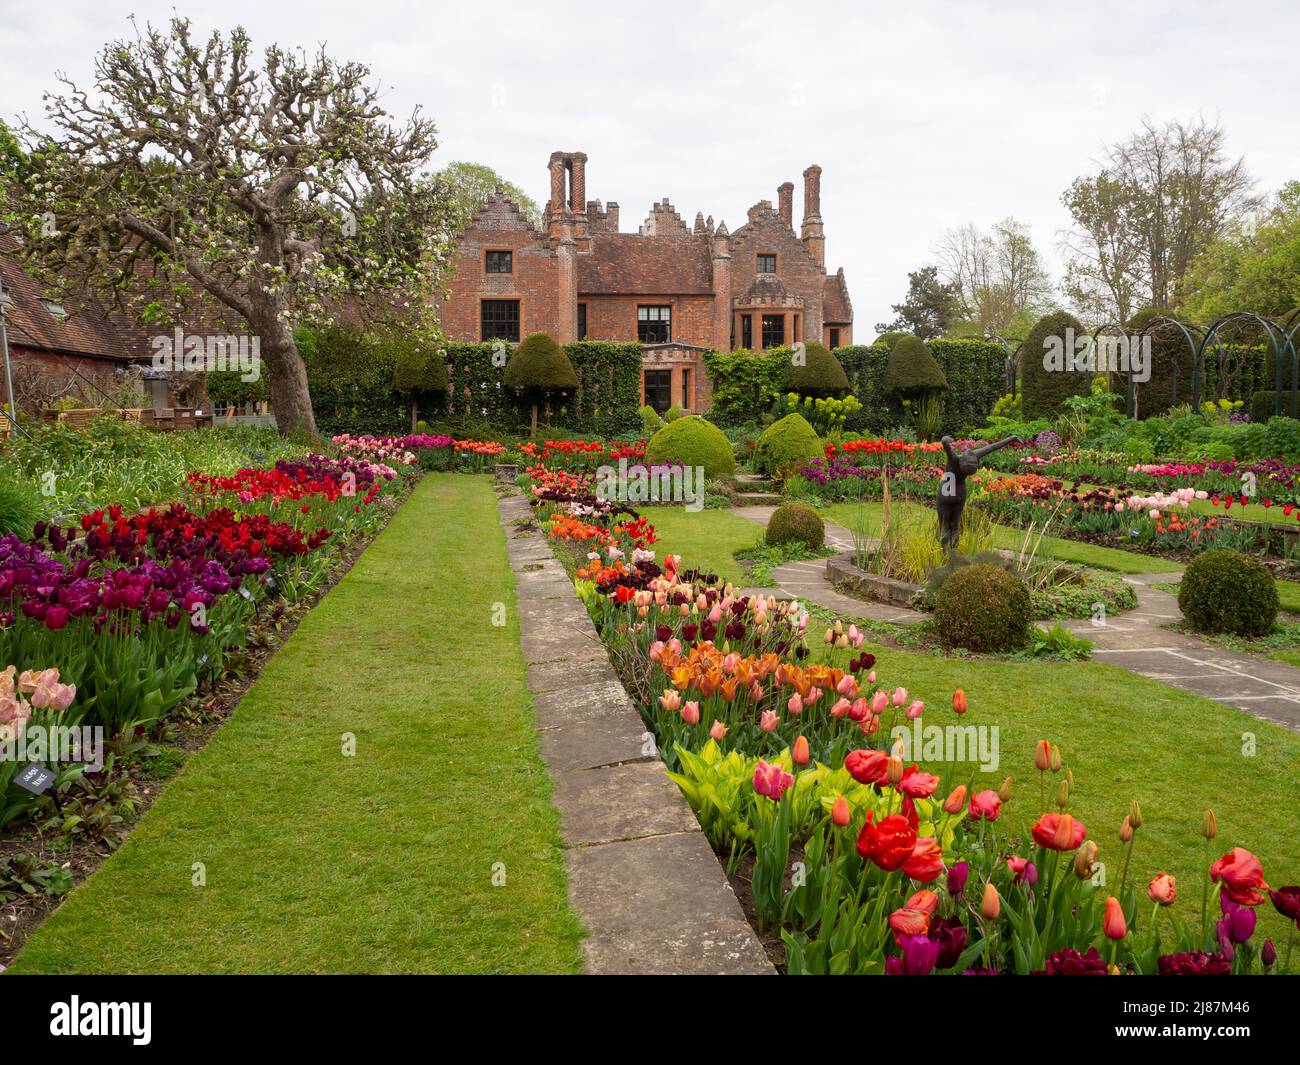 Chenies Manor Garden.Blick auf das Tudor Manor vom schönen versunkenen Garten mit vielen Tulpenarten in voller Blüte. Rot, pastellrosa, lila Blüten. Stockfoto